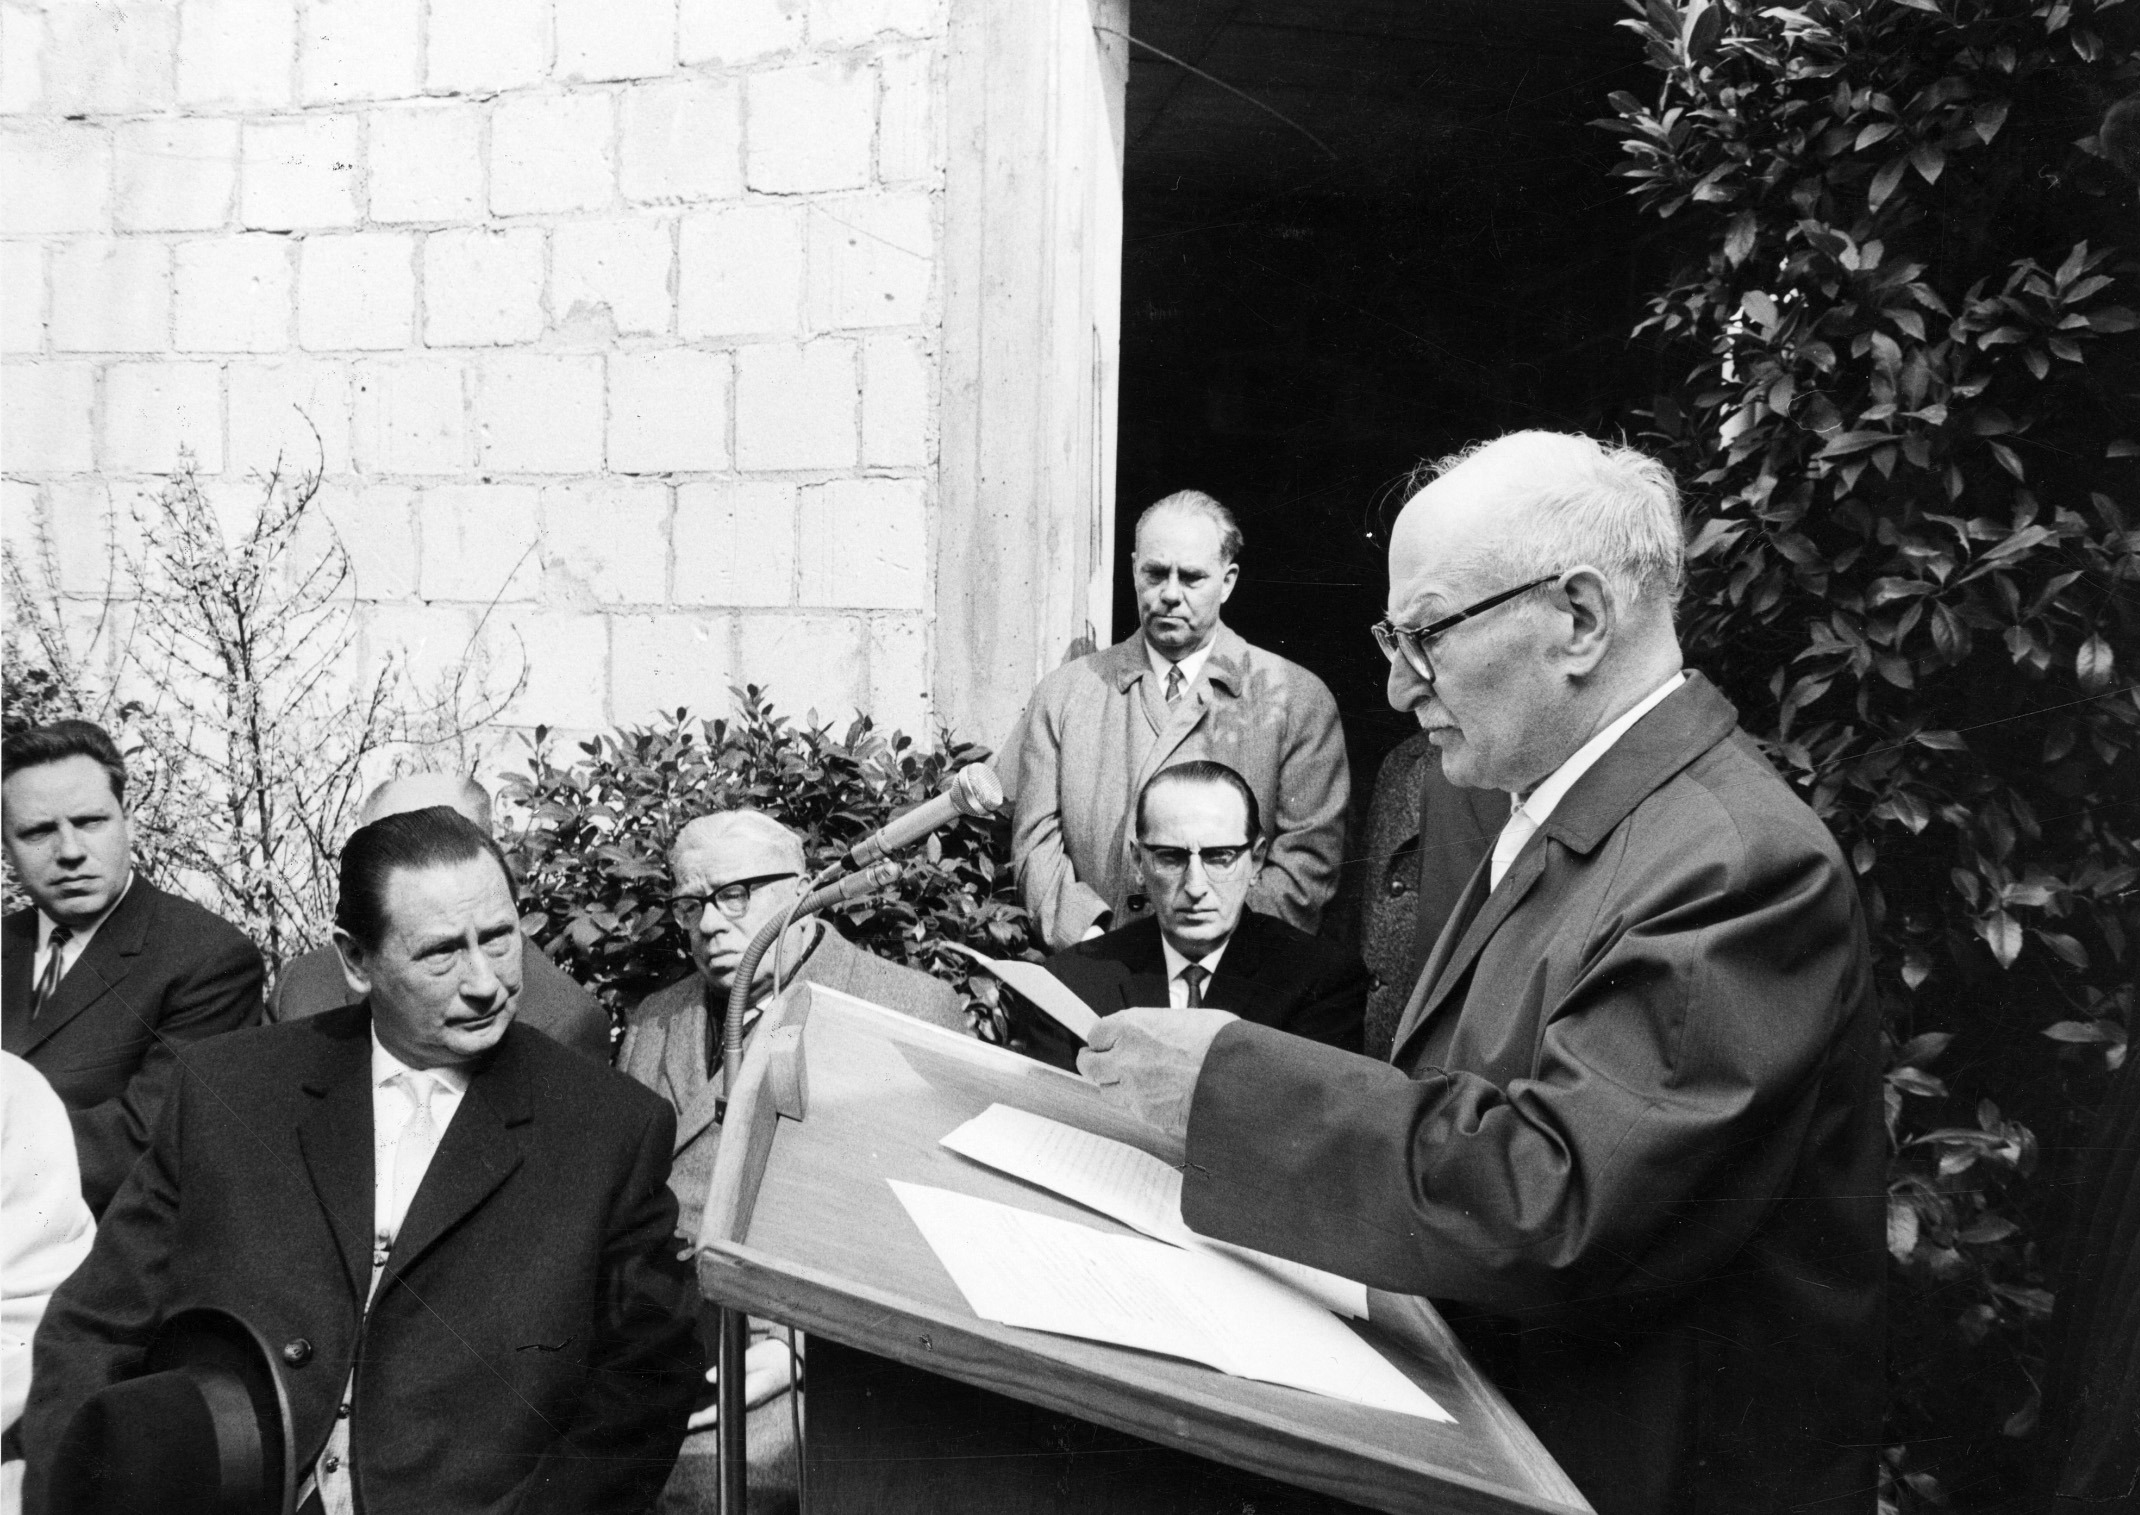 Д-р Фридрих Райхман, председатель еврейской общины Висбадена, открывает торжественную церемонию закладки первого камня в основание нового здания синагоги. Сидит слева: Вильгельм Фройнд. ШтадтА WI, F000-259